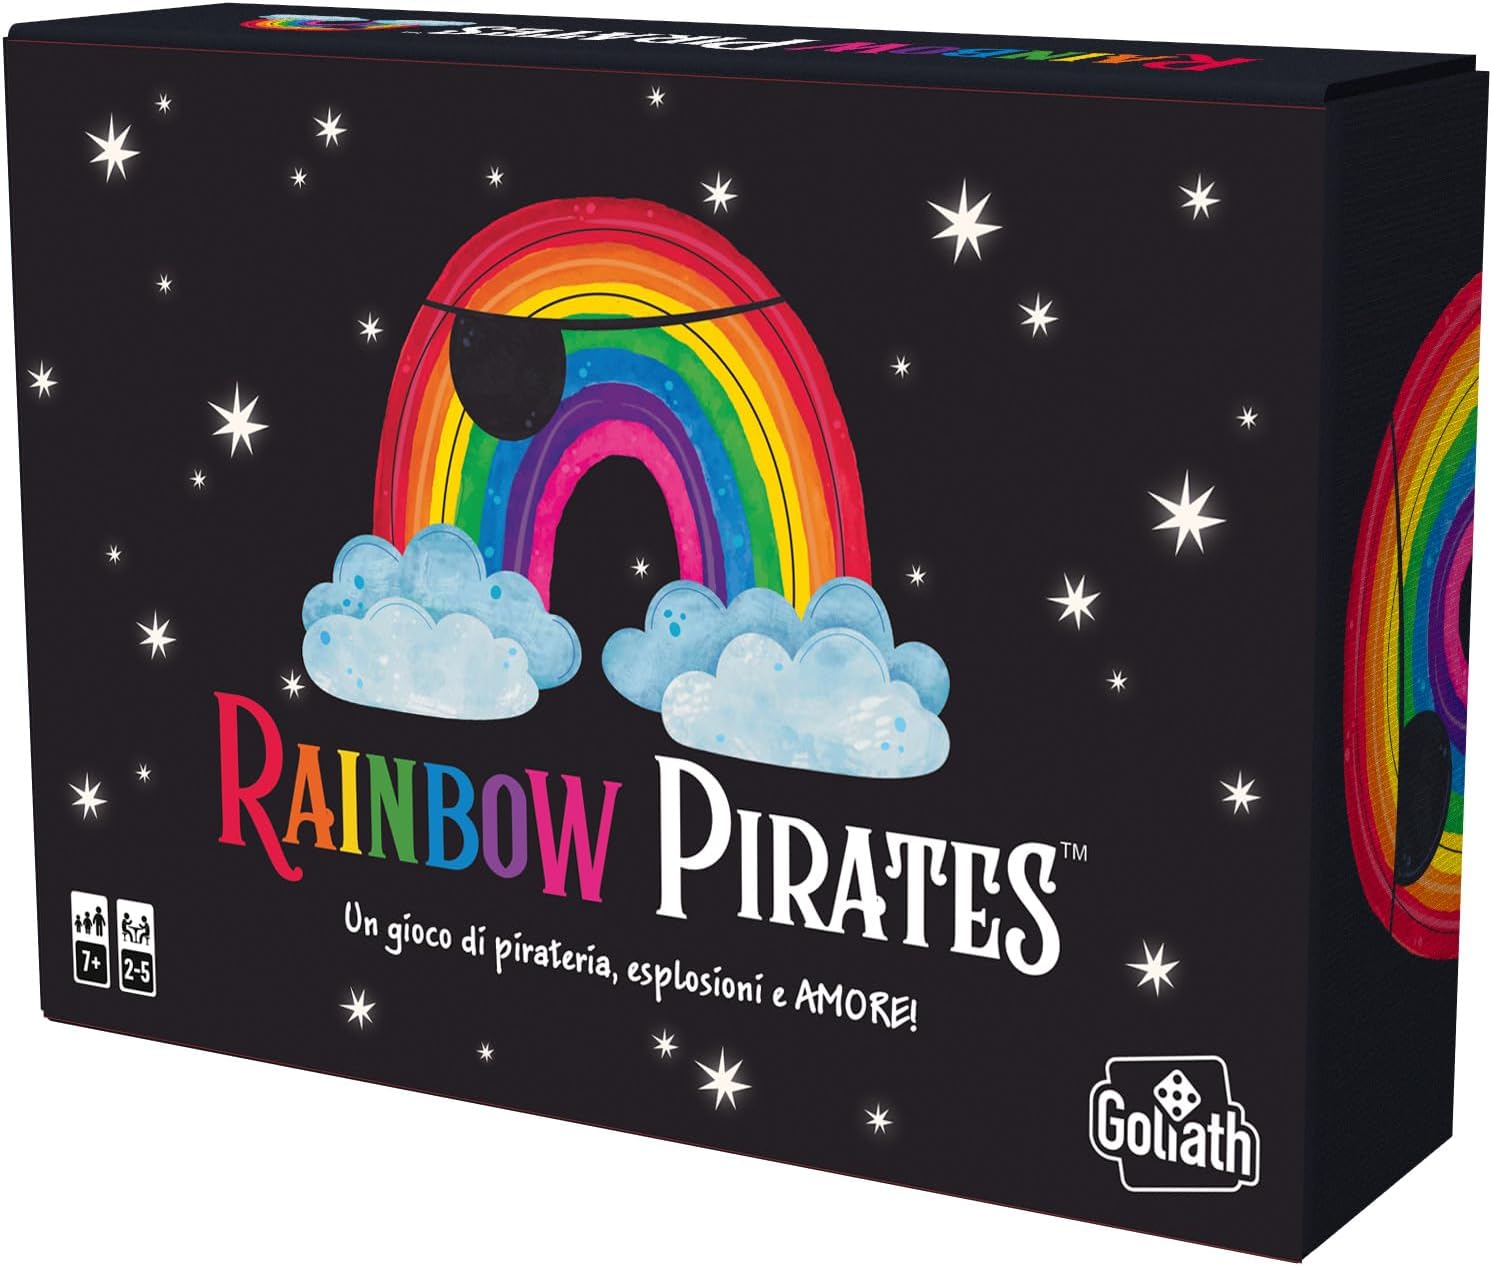 Lean Toys Rainbow Pirates